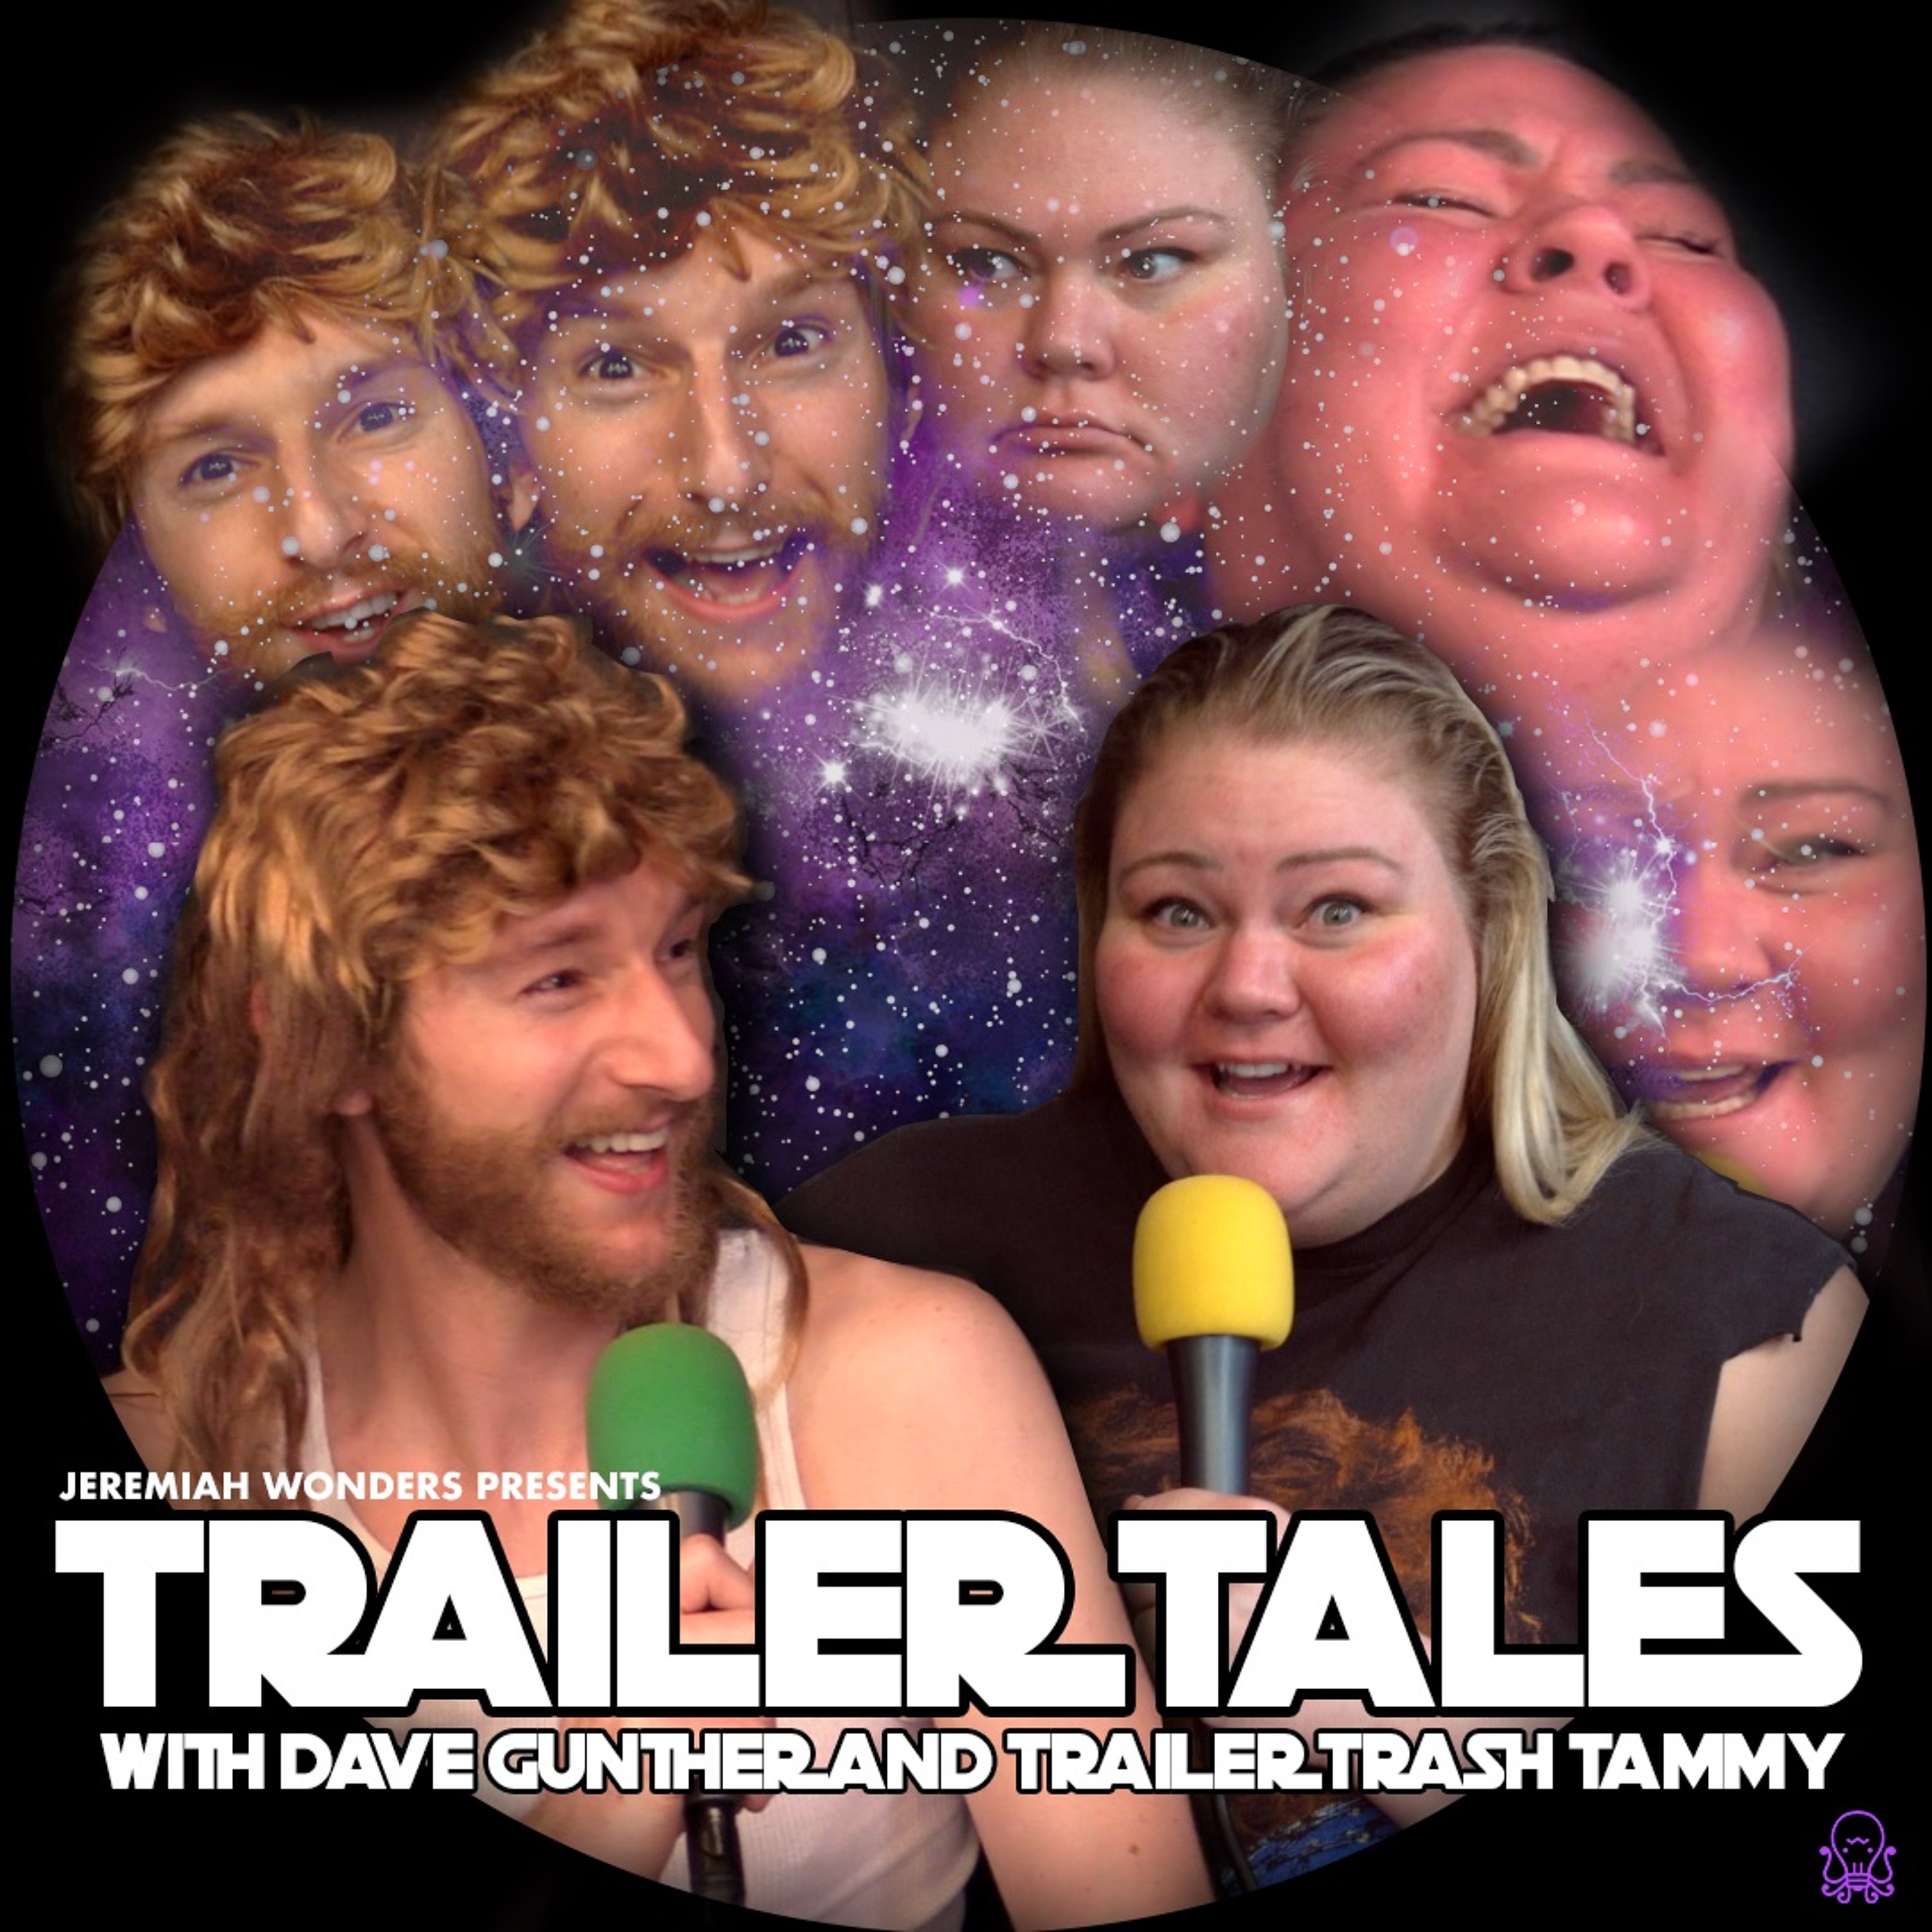 Only fans trailer trash tammy Eatmytrash Com